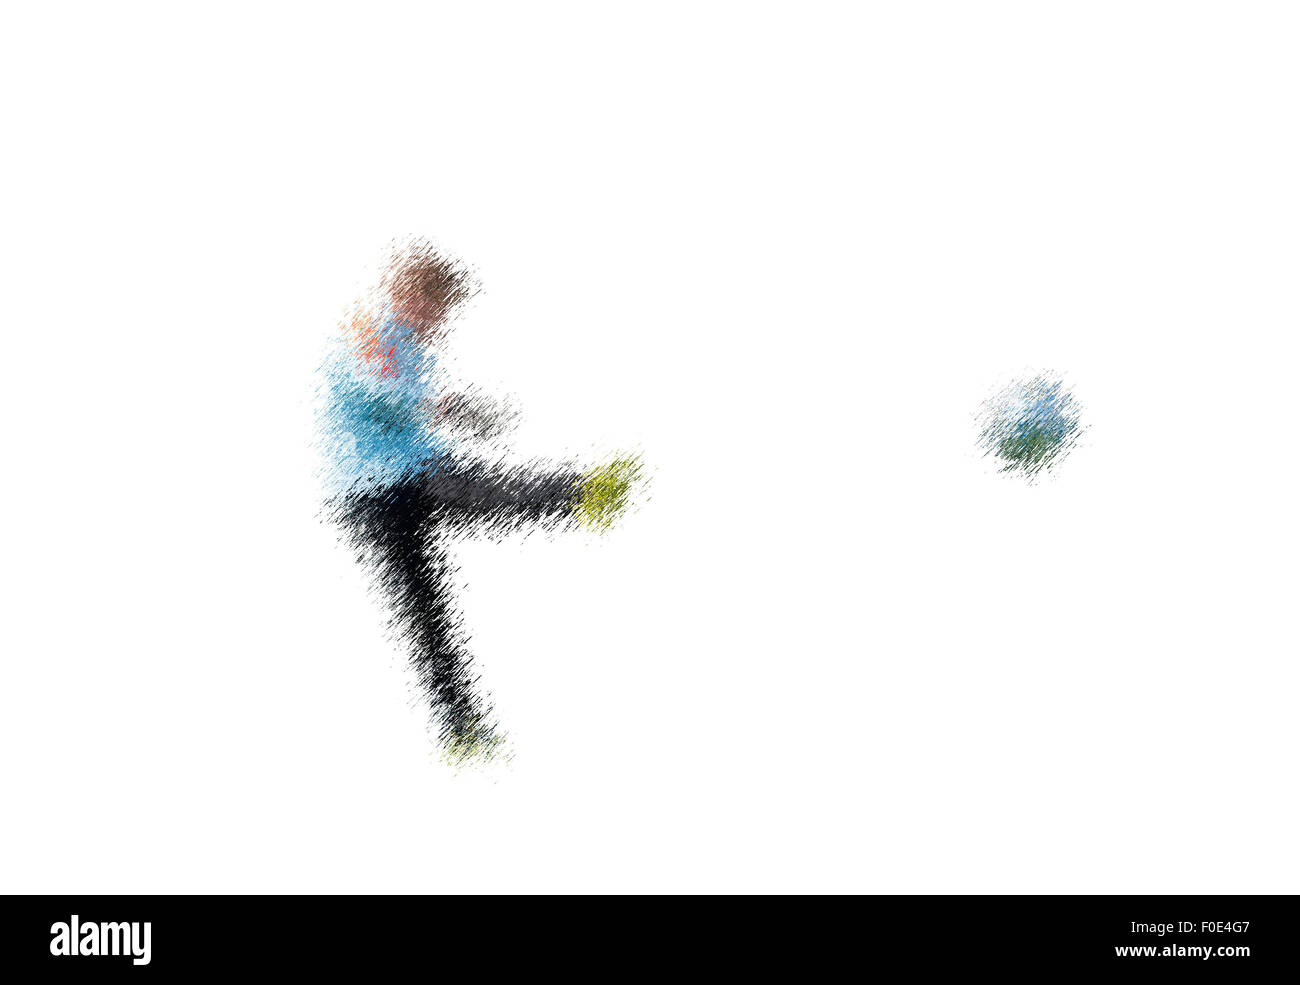 Torhüter in Aktion. Abstrakte digitale Illustration von Fußball-Fußball-Spieler, isolieren Jugendliche rund 15 Jahre alt, in Aktion Stockfoto